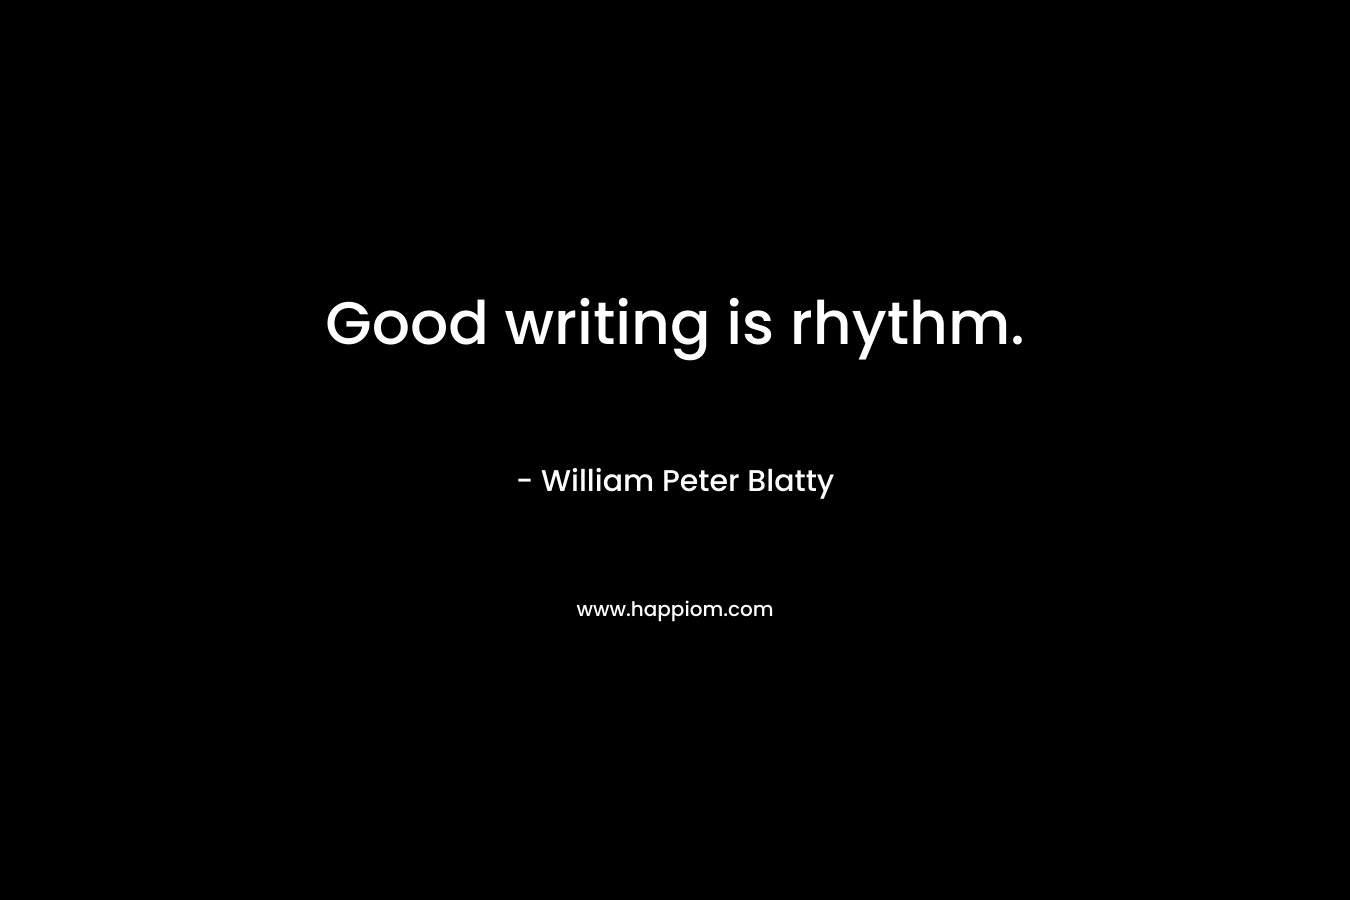 Good writing is rhythm. – William Peter Blatty